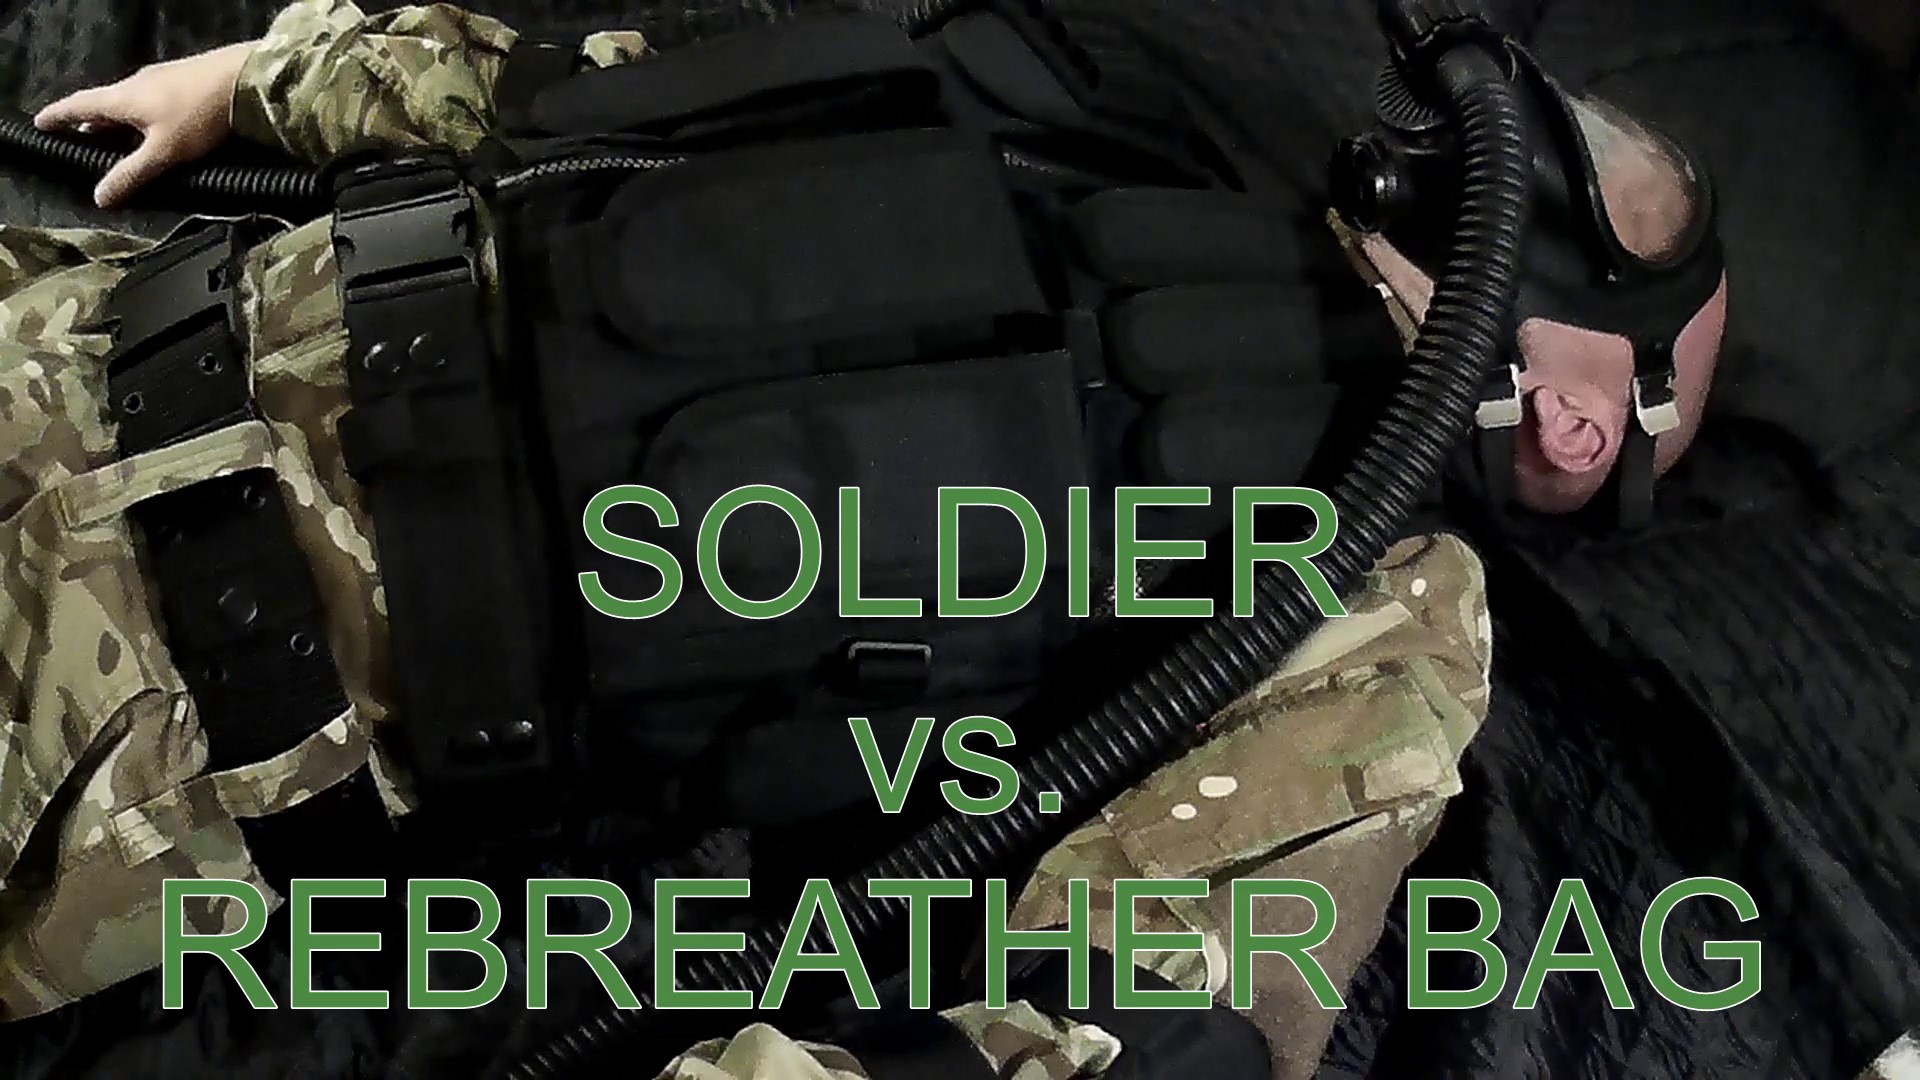 Soldier vs rebreather bag